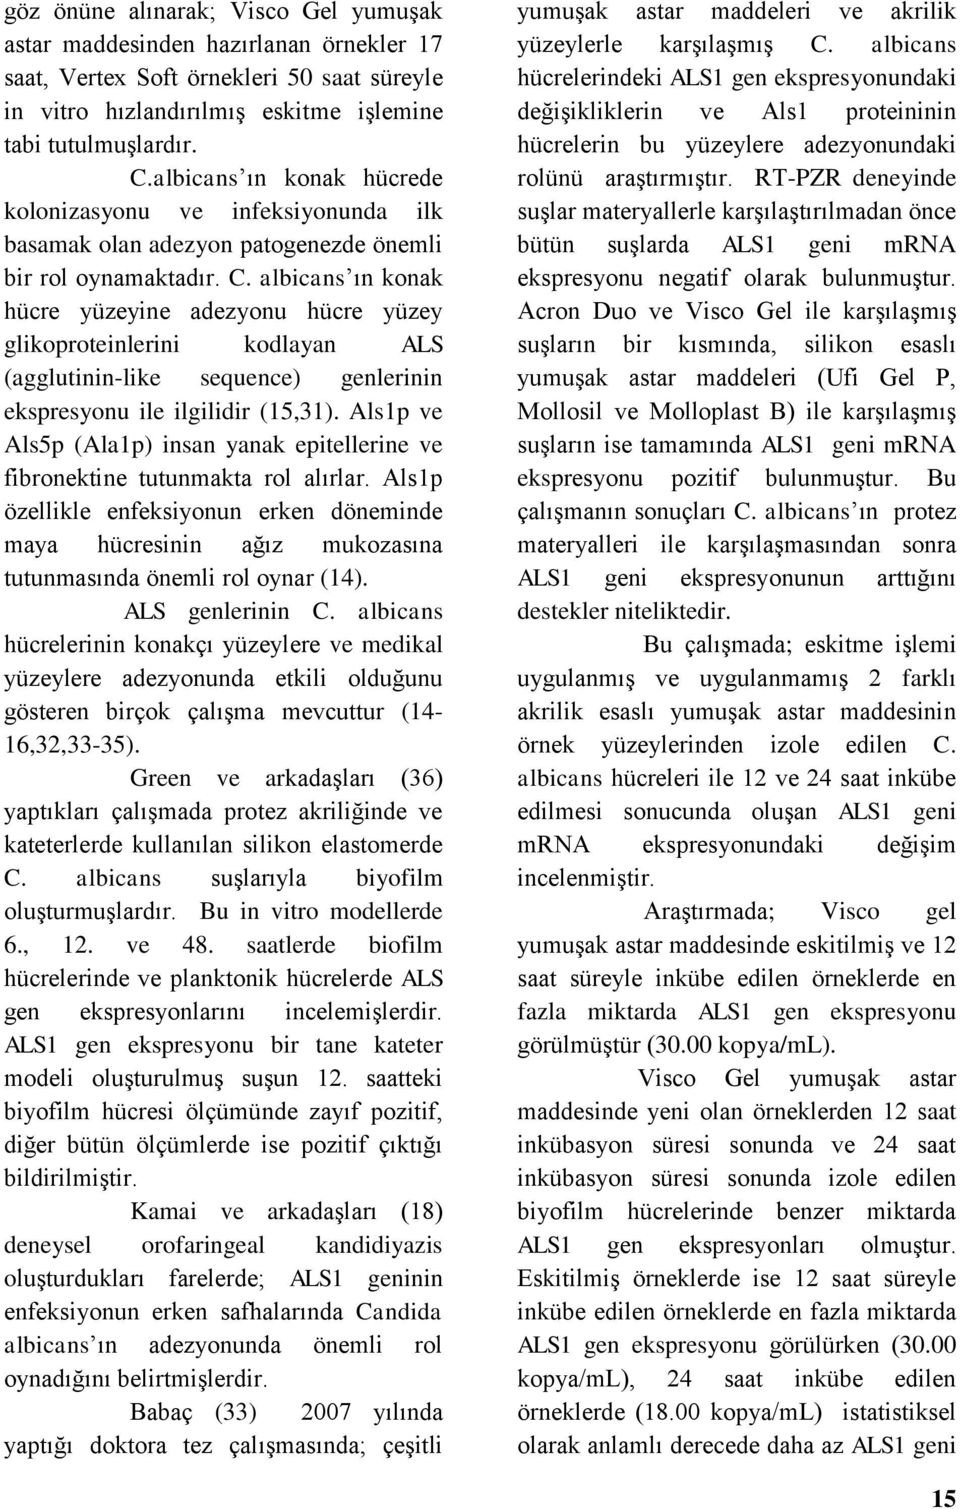 albicans ın konak hücre yüzeyine adezyonu hücre yüzey glikoproteinlerini kodlayan ALS (agglutinin-like sequence) genlerinin ekspresyonu ile ilgilidir (15,31).